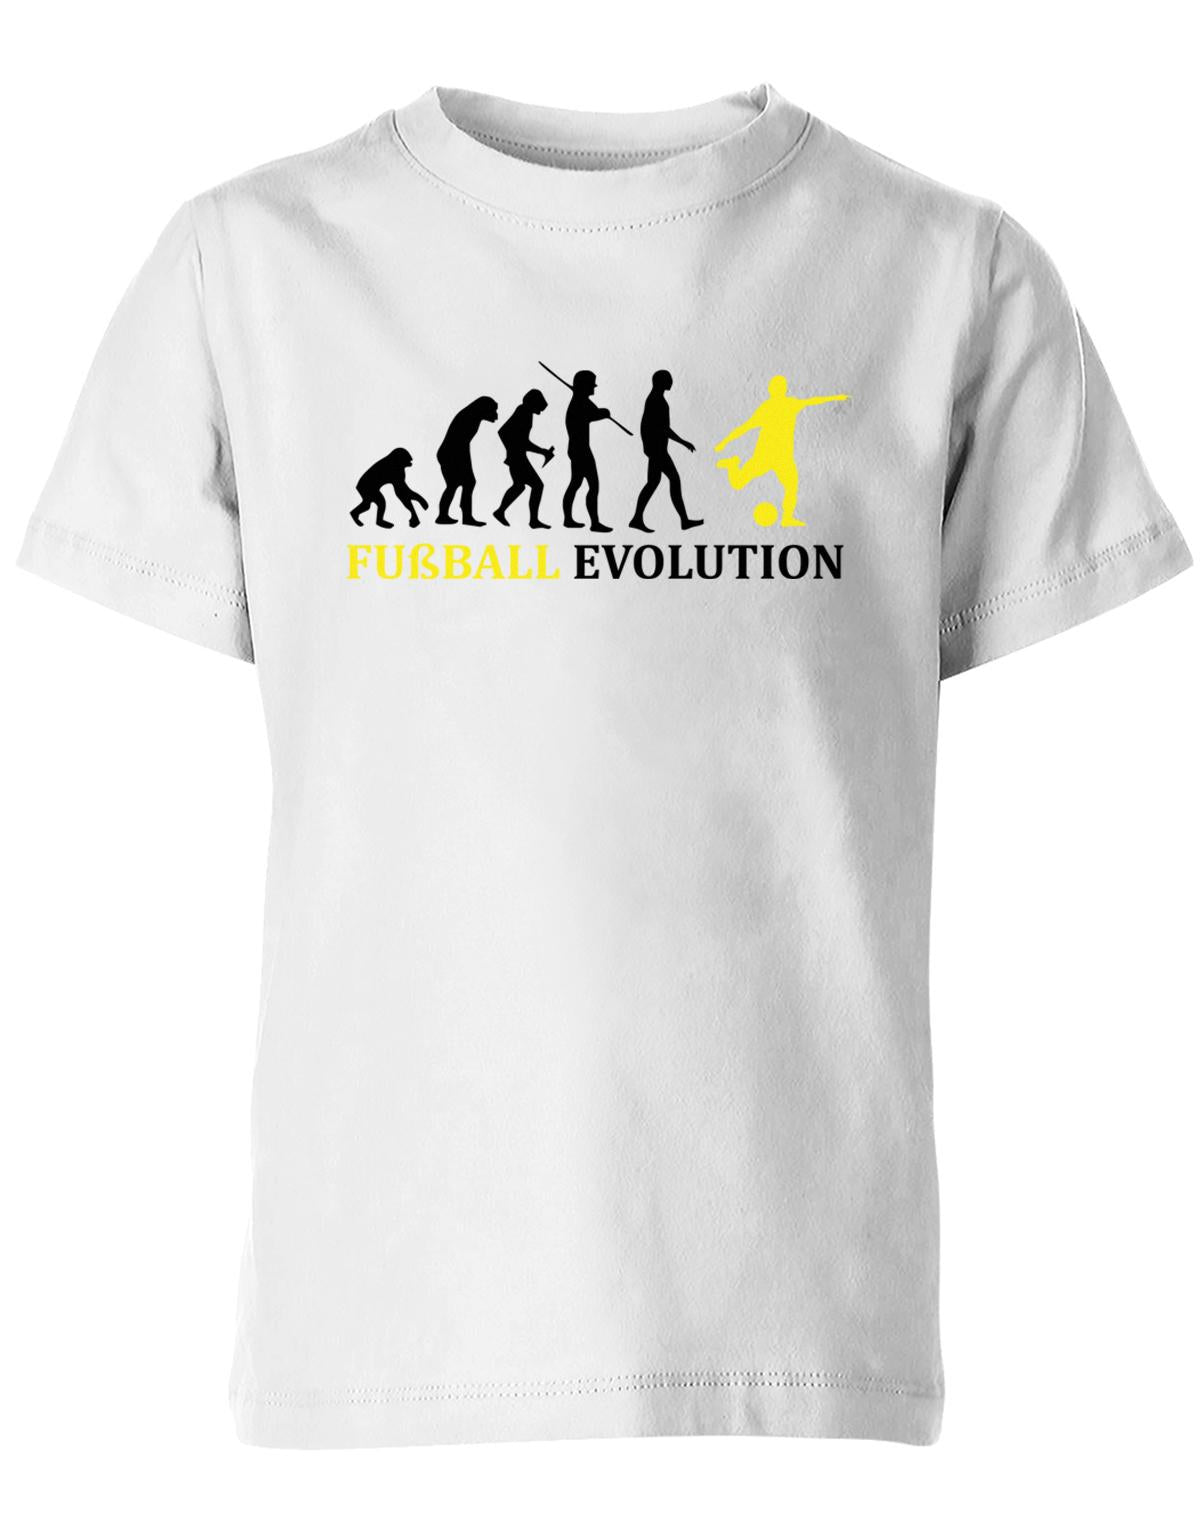 Fussball-Evolution-Kinder-Shirt-Weiss-Gelb